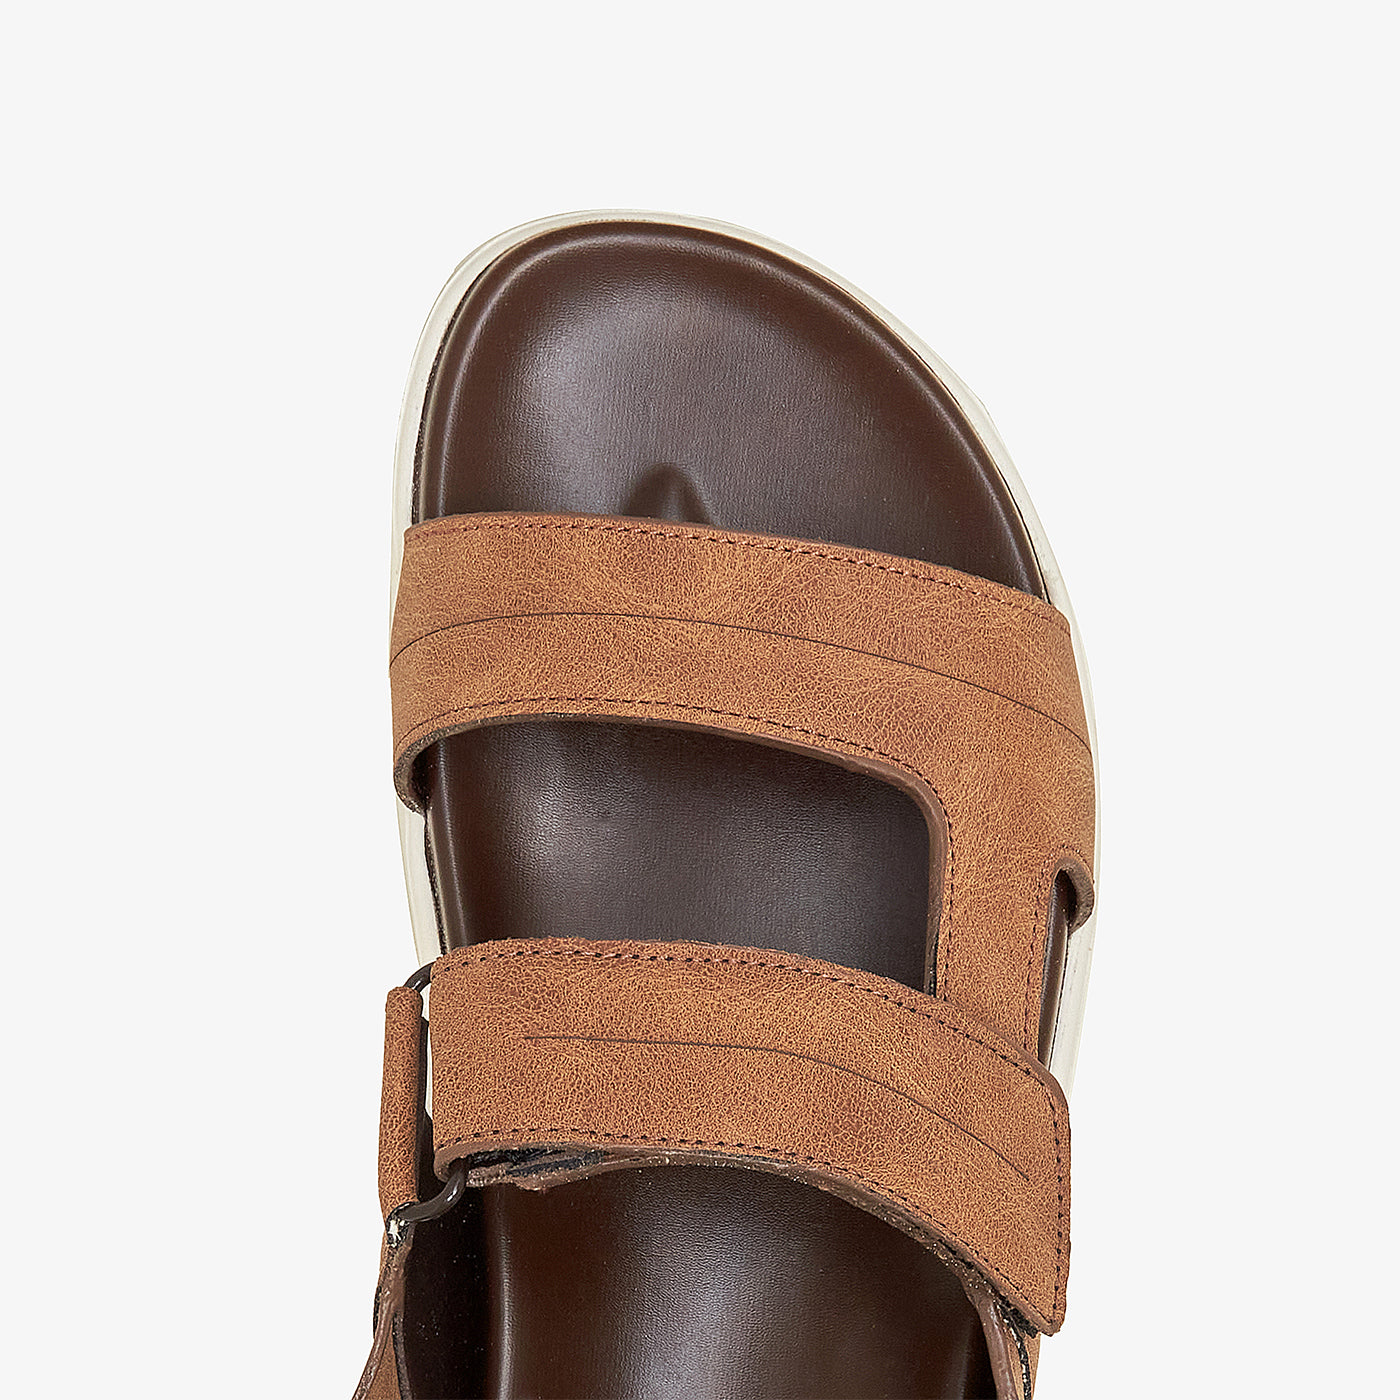 Men's Soft Summer Sandals